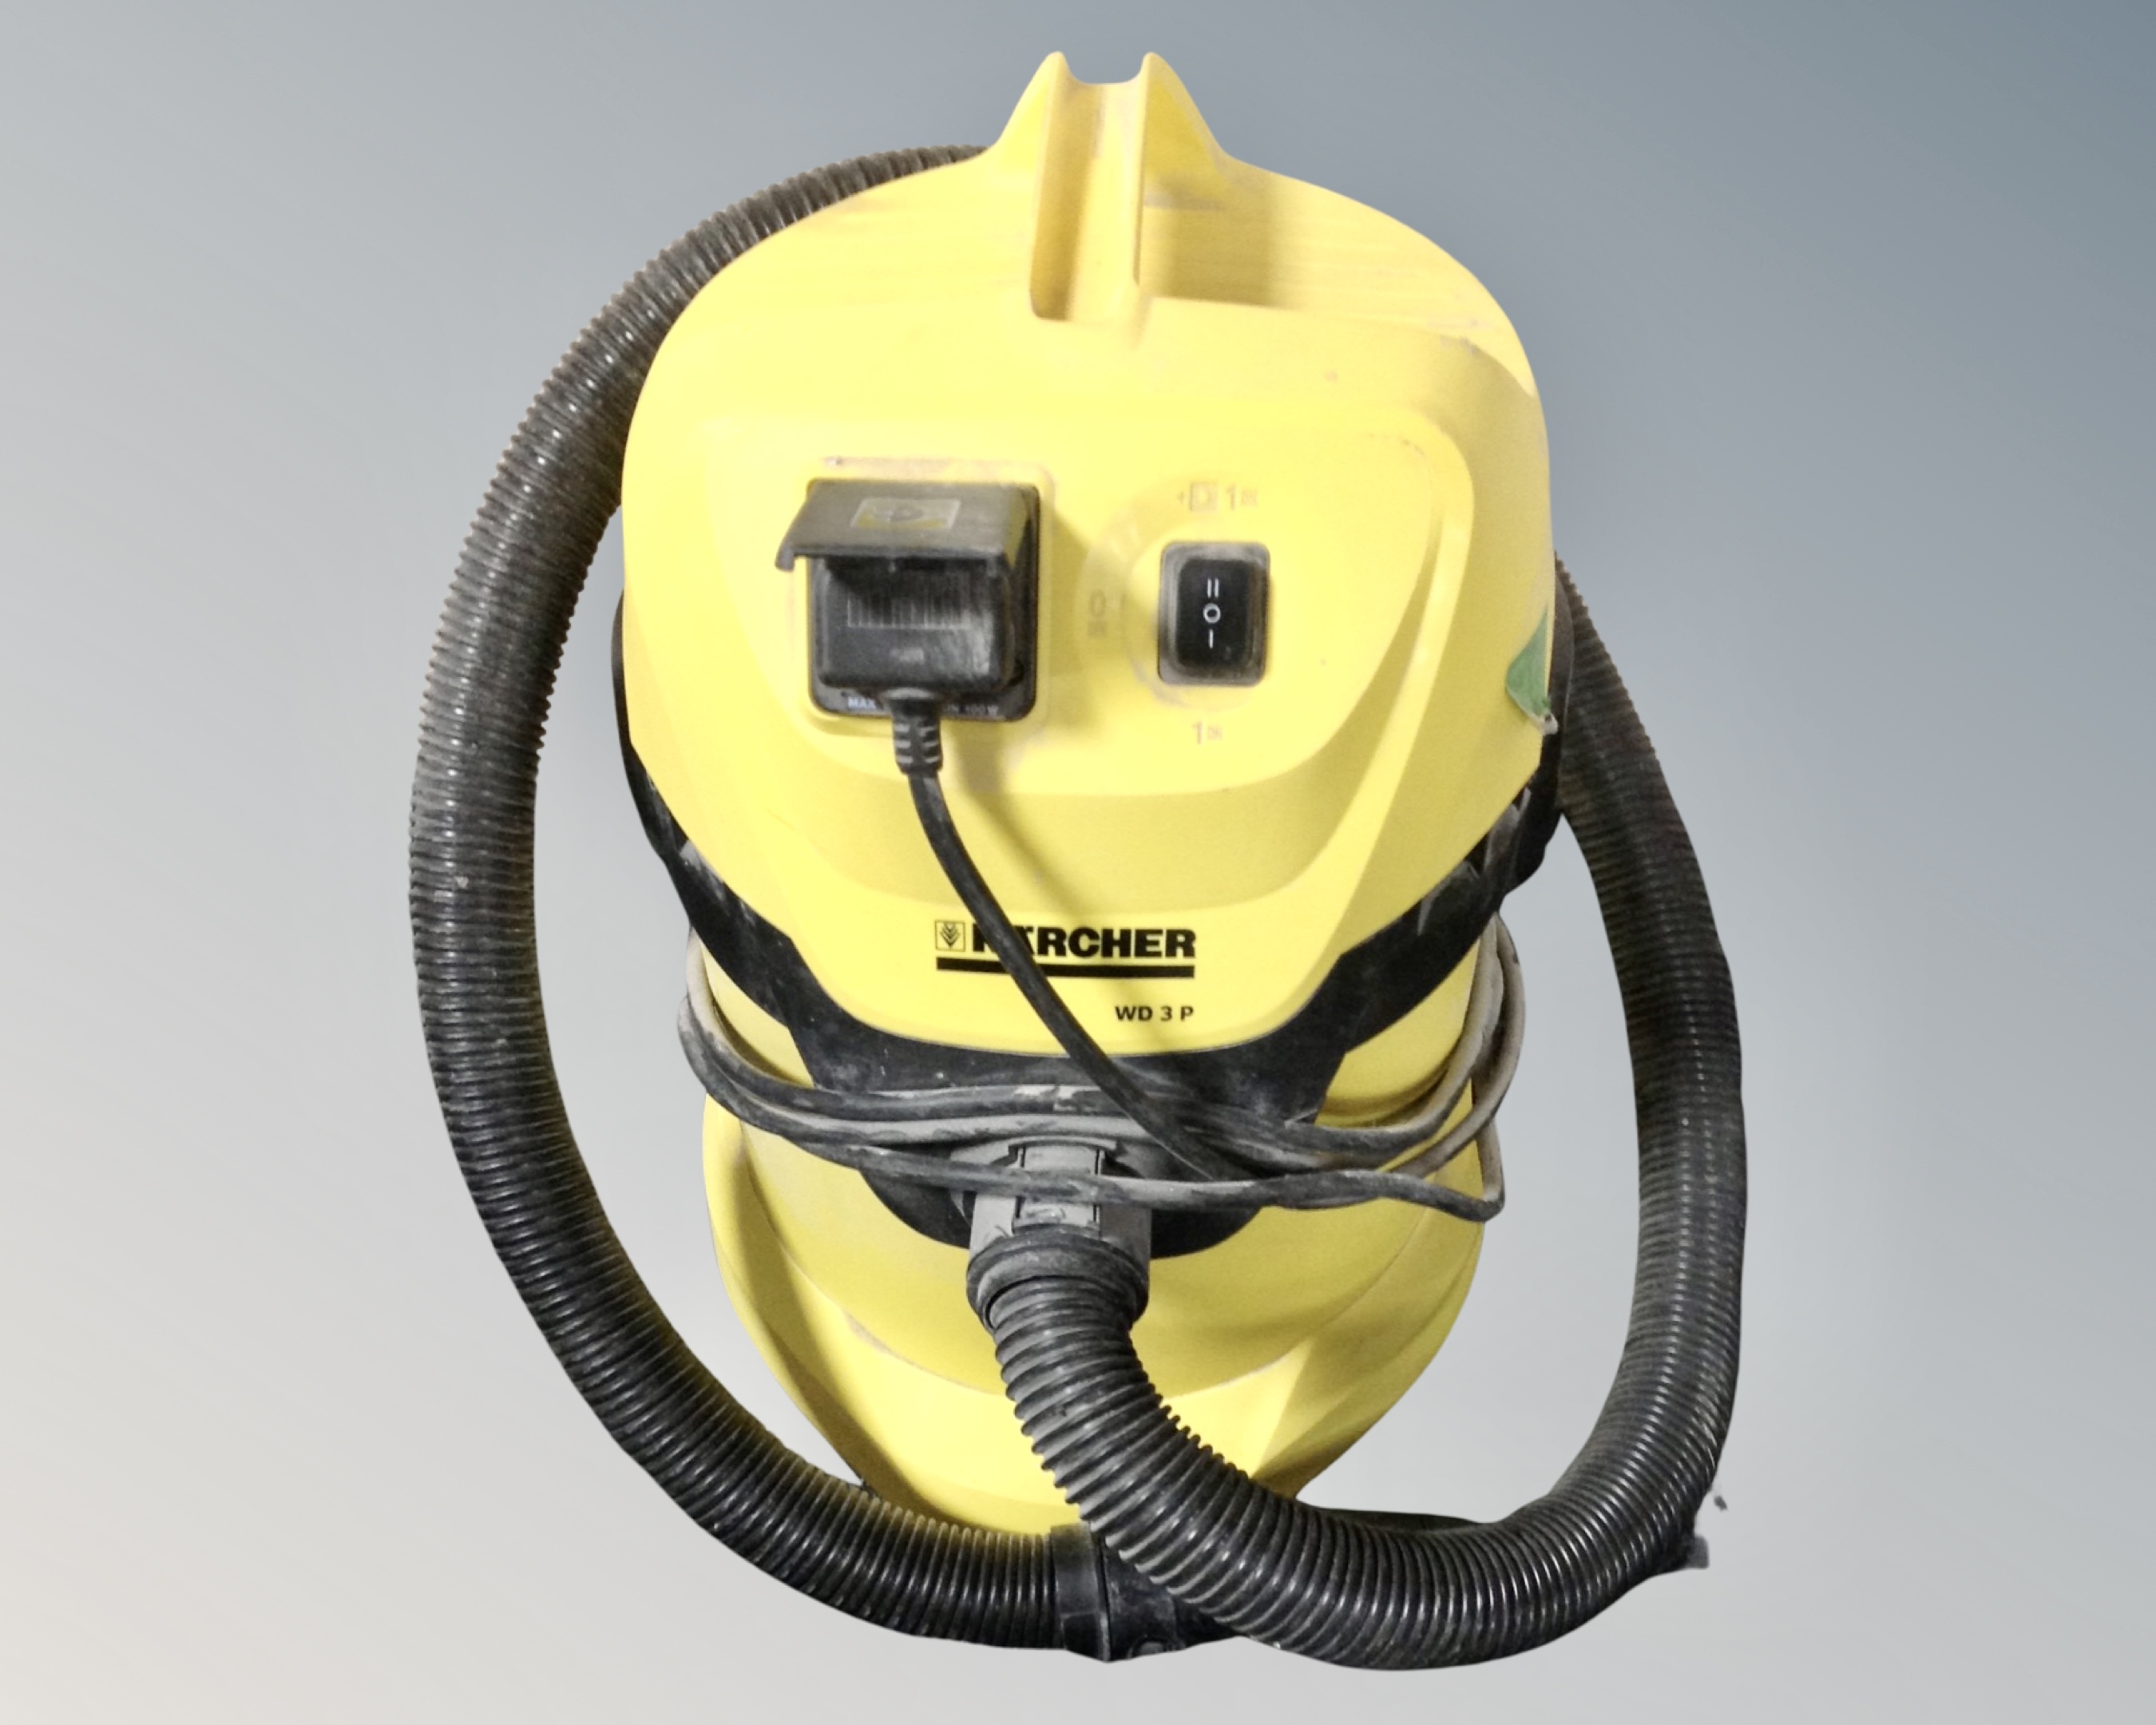 A Karcher WD 3 P vacuum with hose